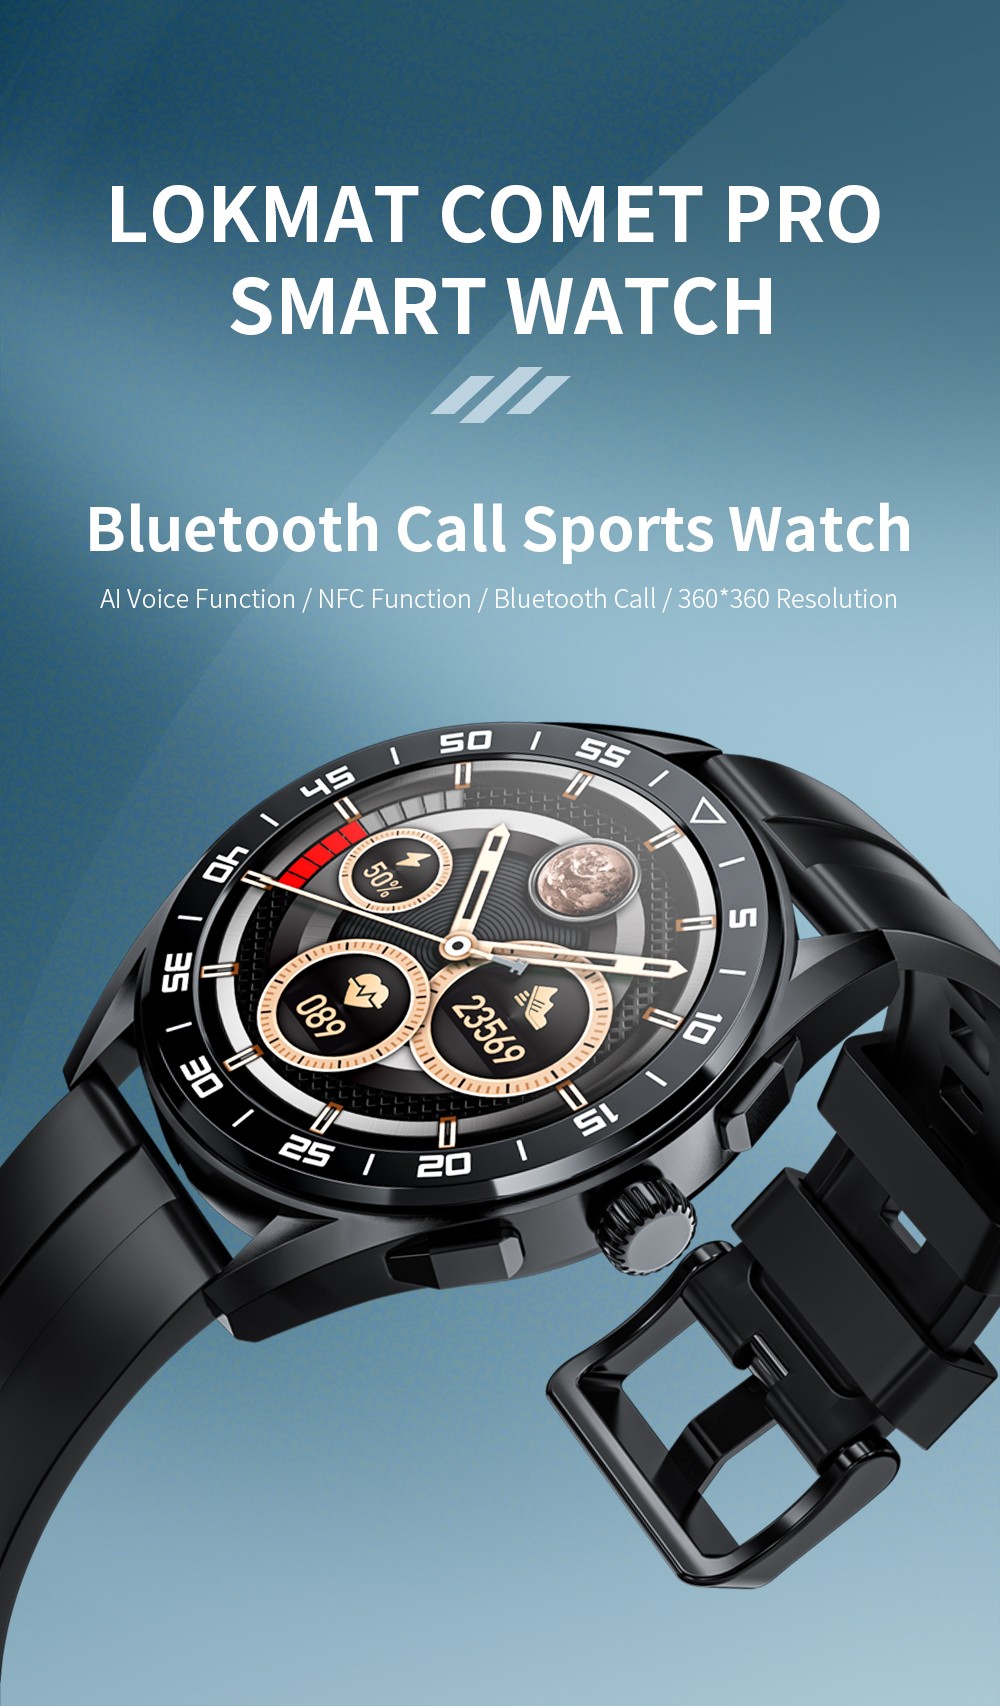 Ikseb LOKMAT COMET PRO Smartwatch Bluetooth Calling Watch 1.32'' Screen għal 30€ biss bil-Kunun tagħna fuq GEEKBUYING